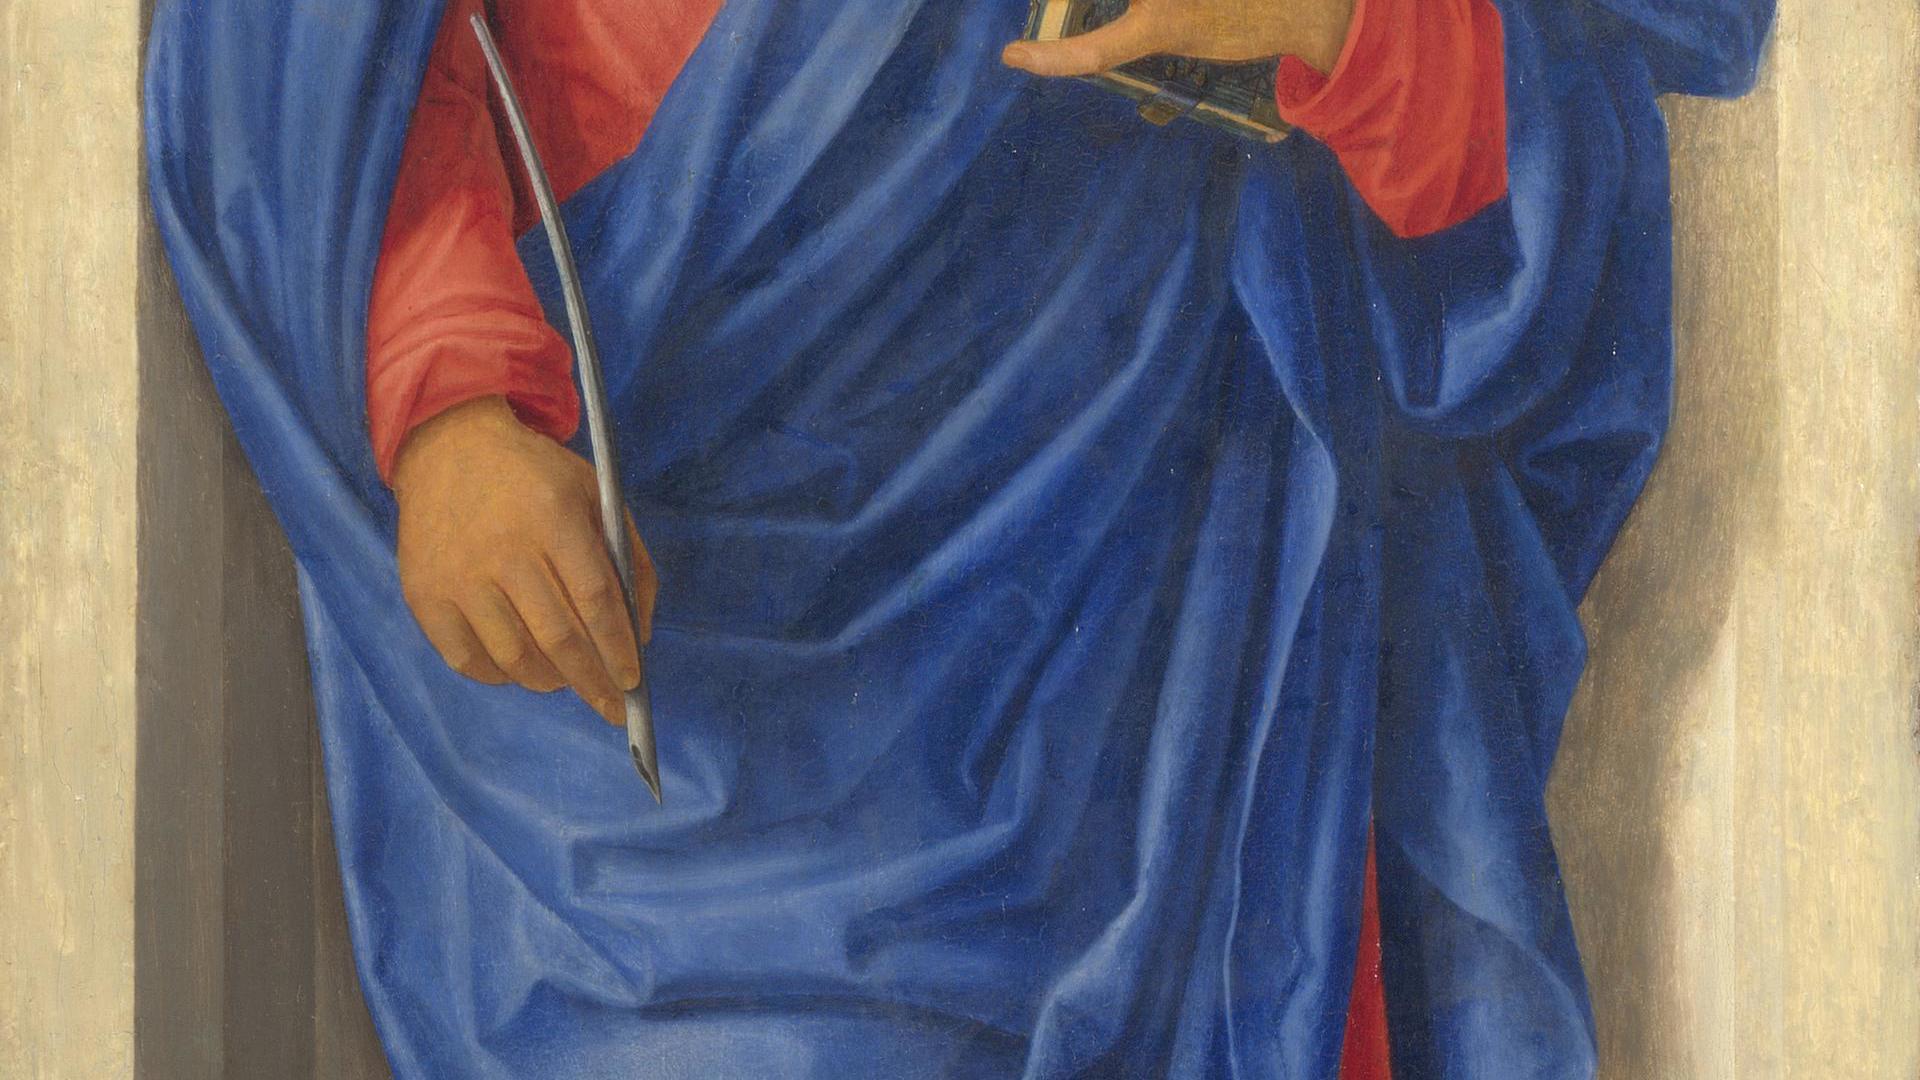 Saint Mark (?) by Giovanni Battista Cima da Conegliano